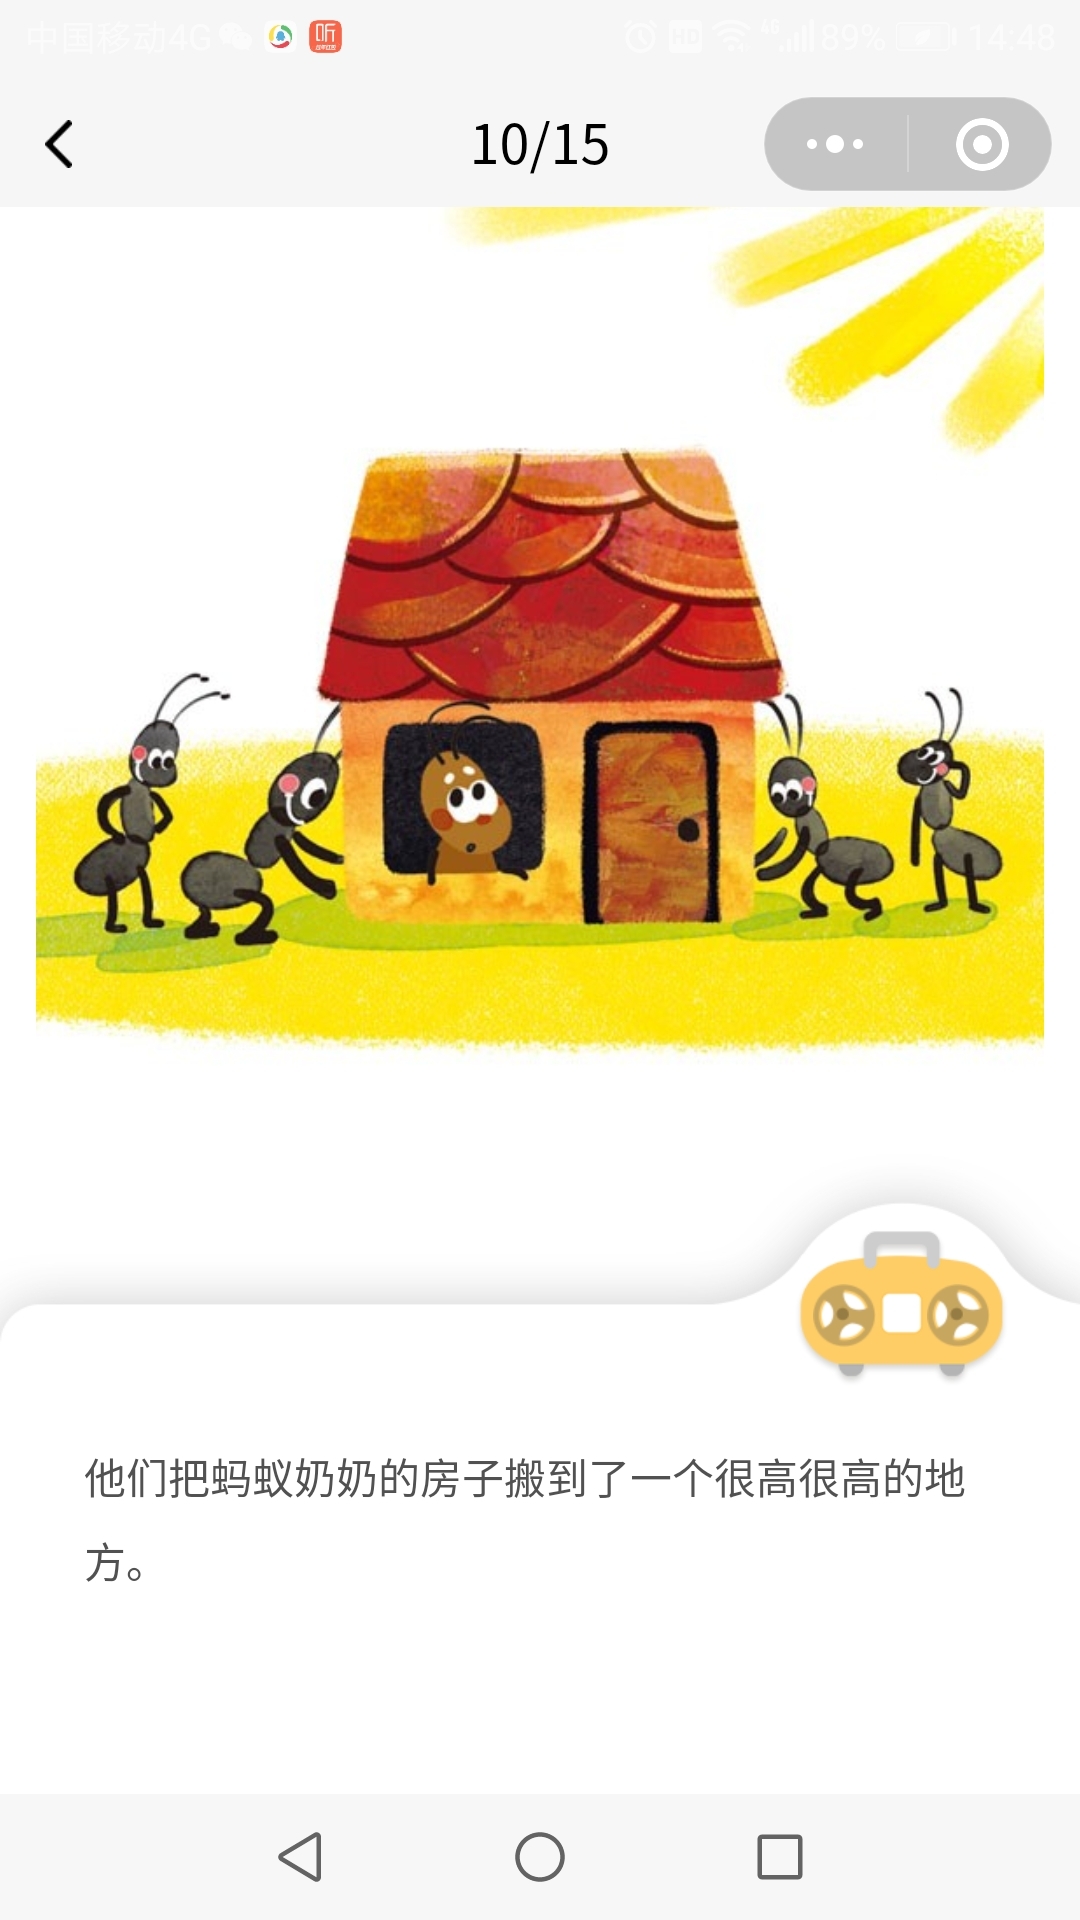 石镜幼儿园宝宝班绘本故事《蚂蚁奶奶的房子》